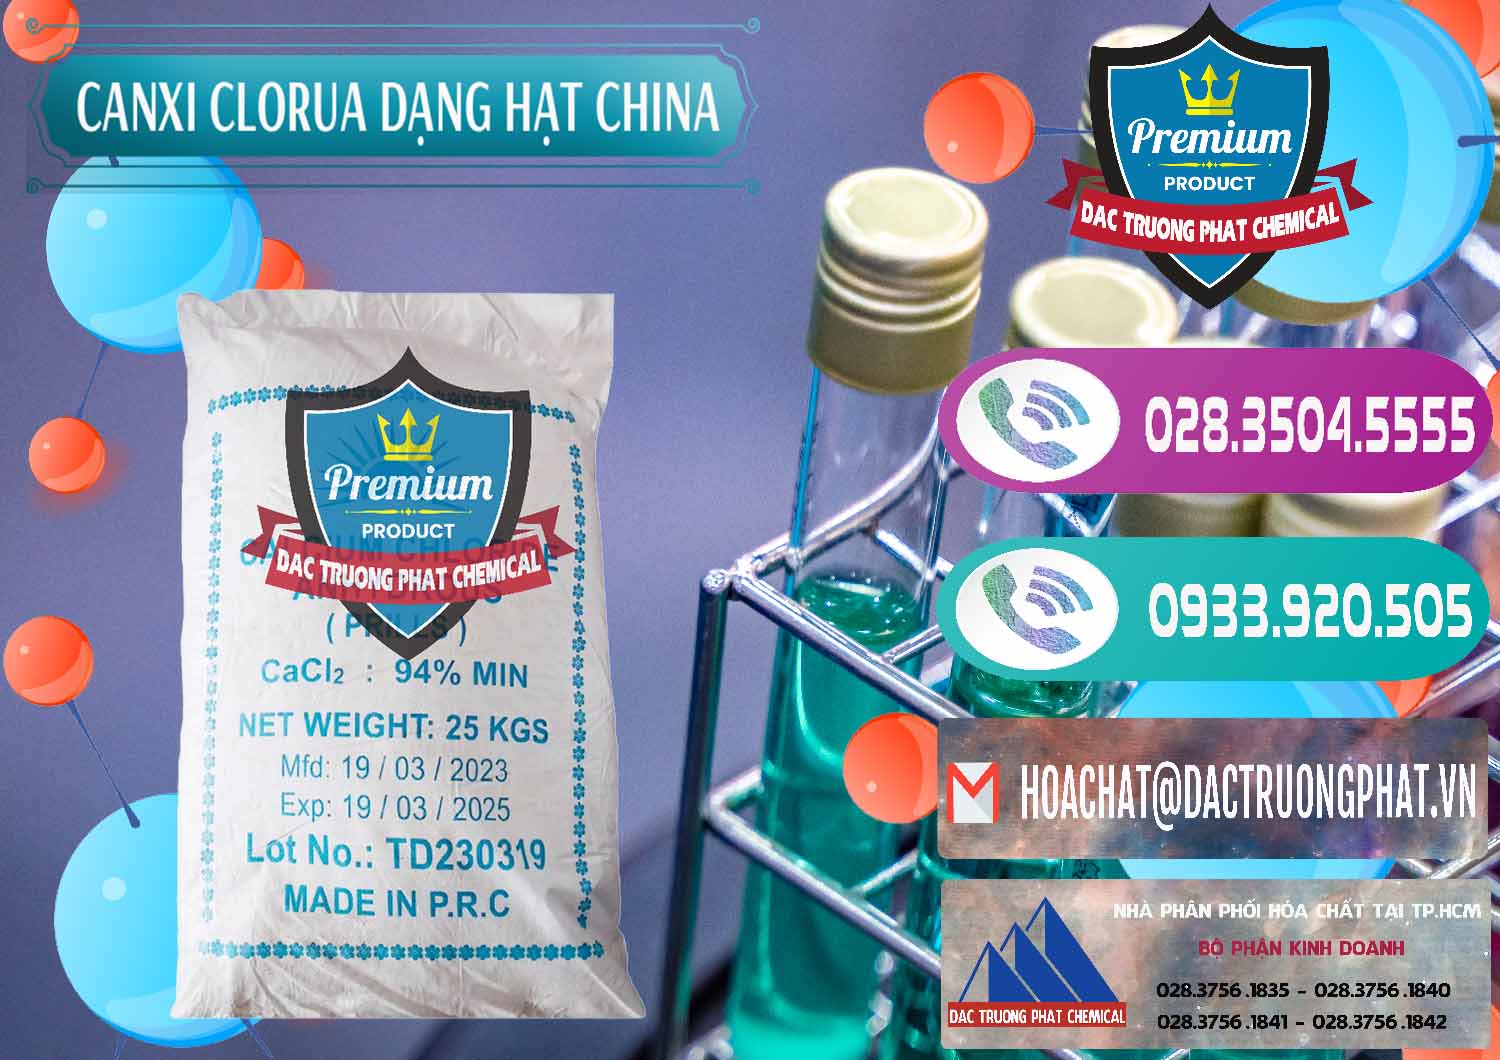 Phân phối & bán CaCl2 – Canxi Clorua 94% Dạng Hạt Trung Quốc China - 0373 - Đơn vị bán ( cung cấp ) hóa chất tại TP.HCM - hoachatxulynuoc.com